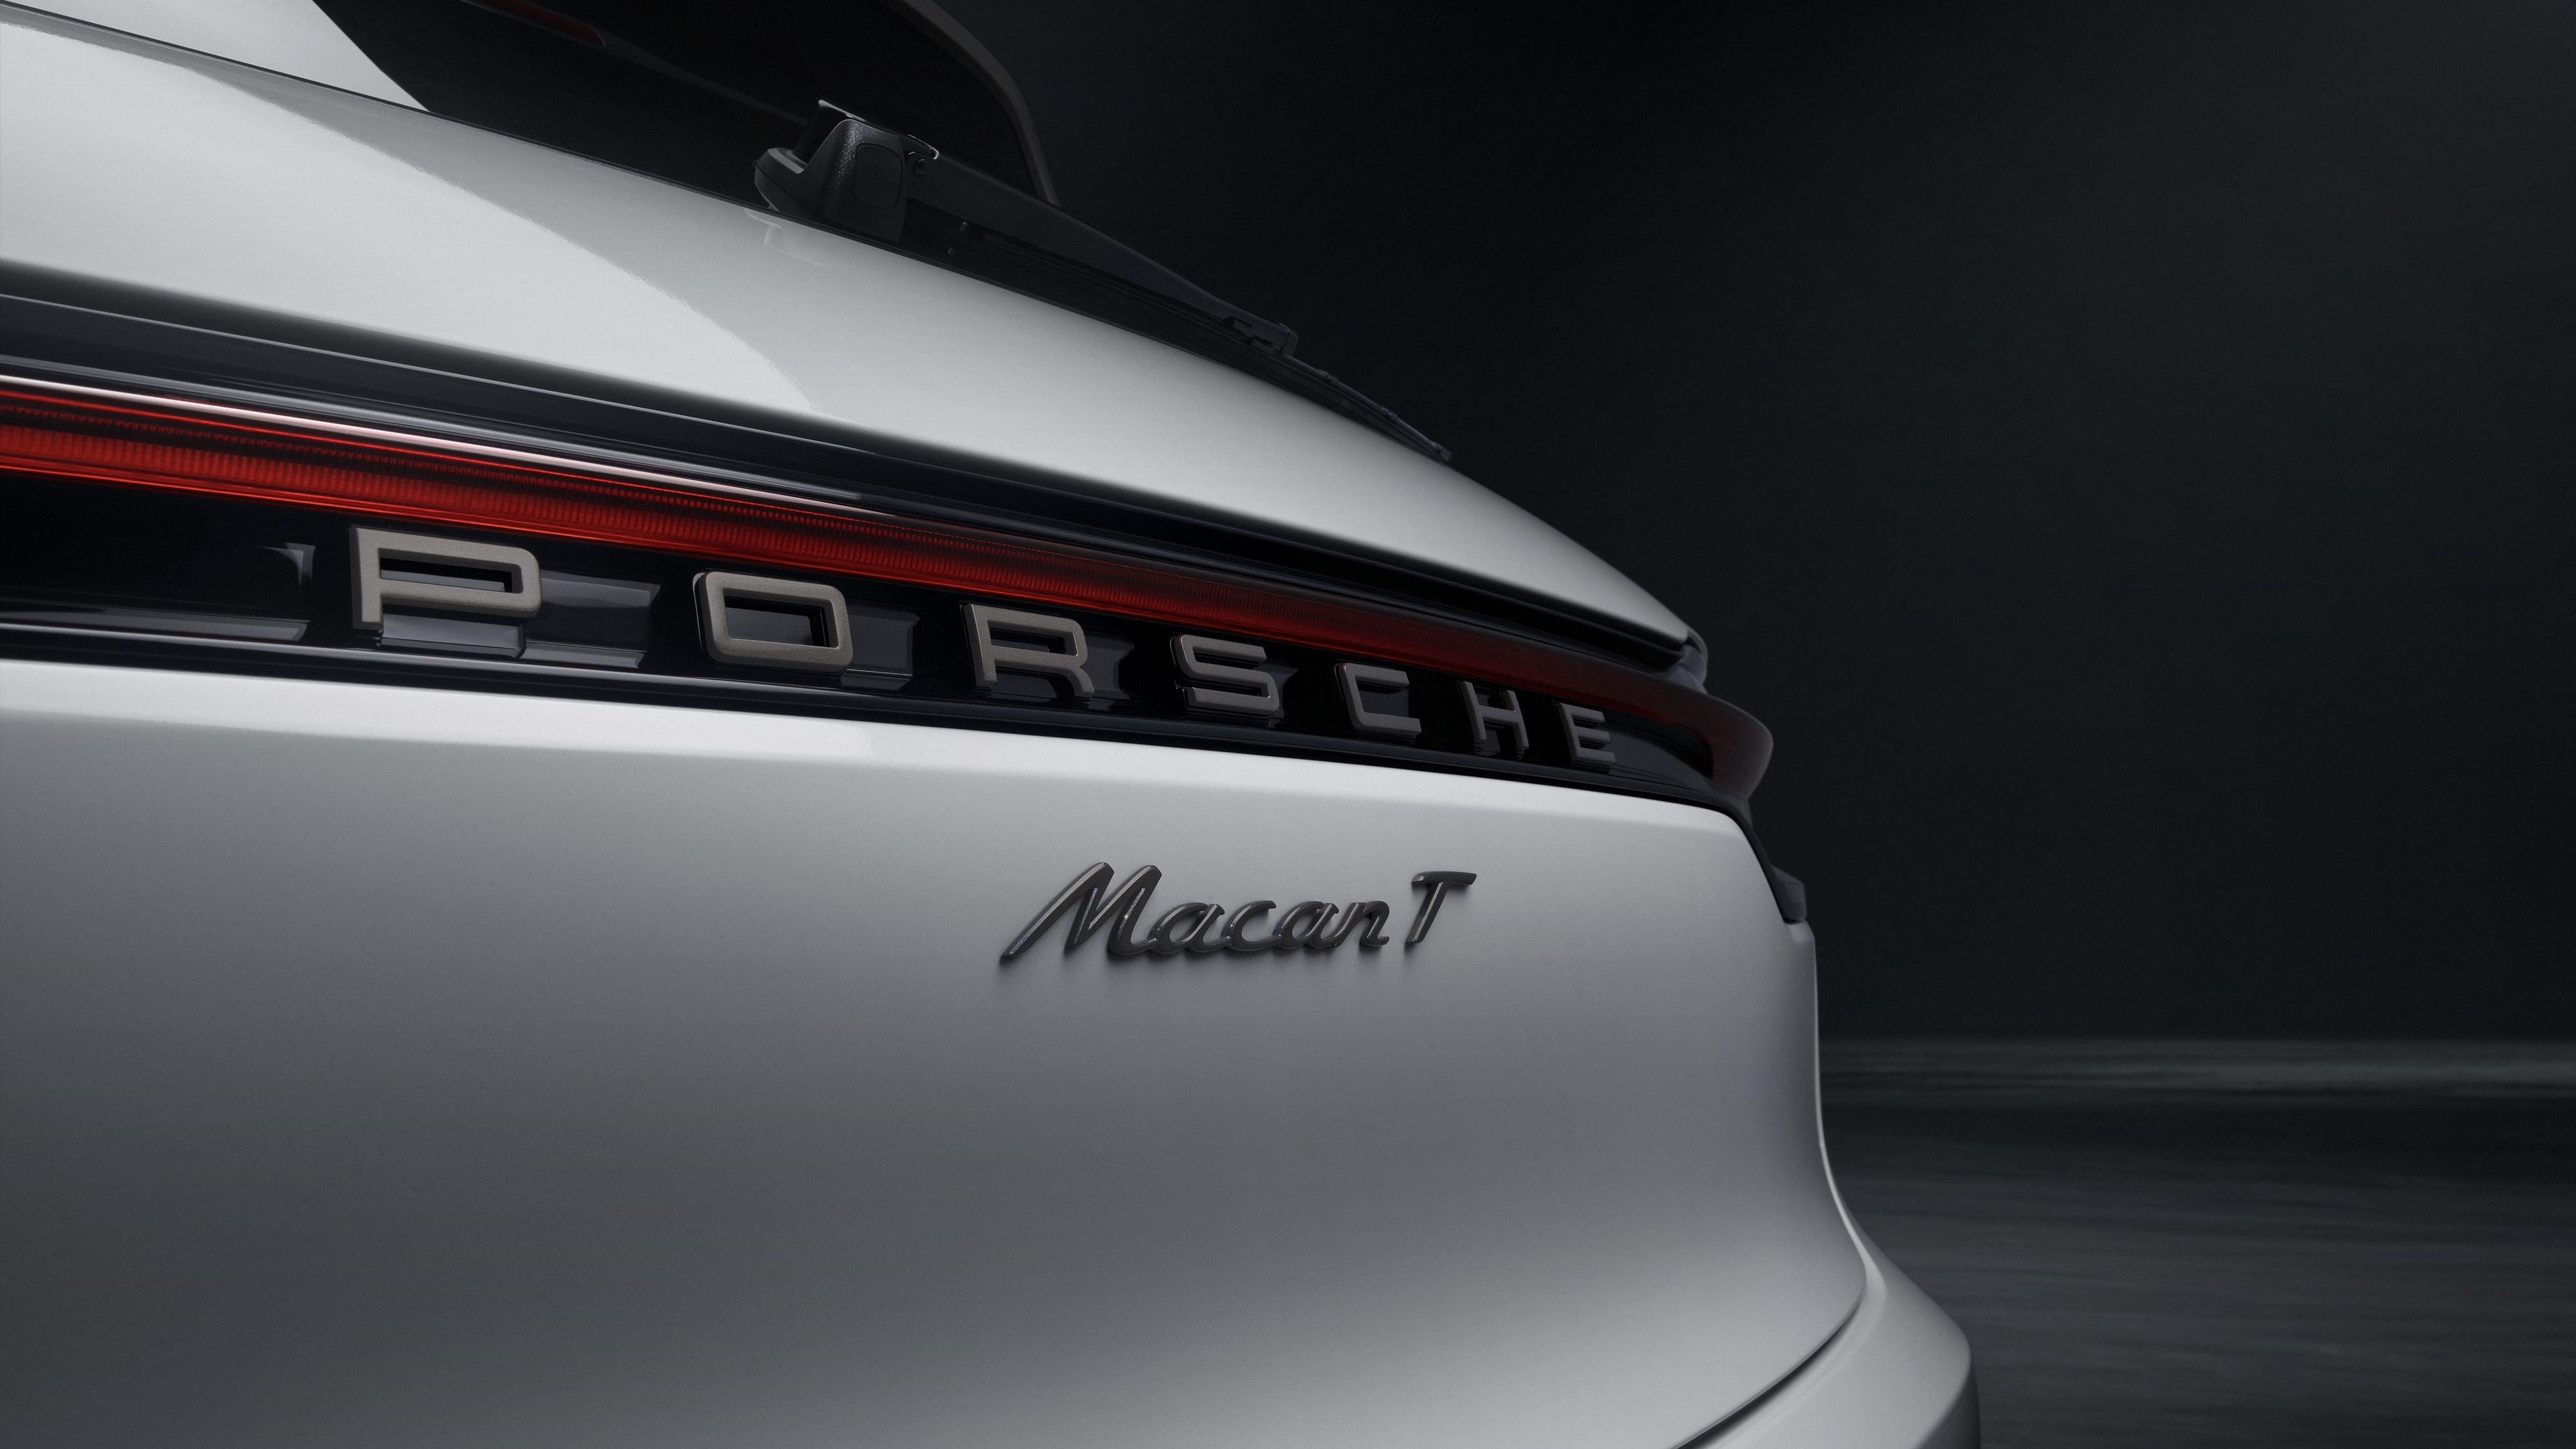 Porsche Macan T 2022